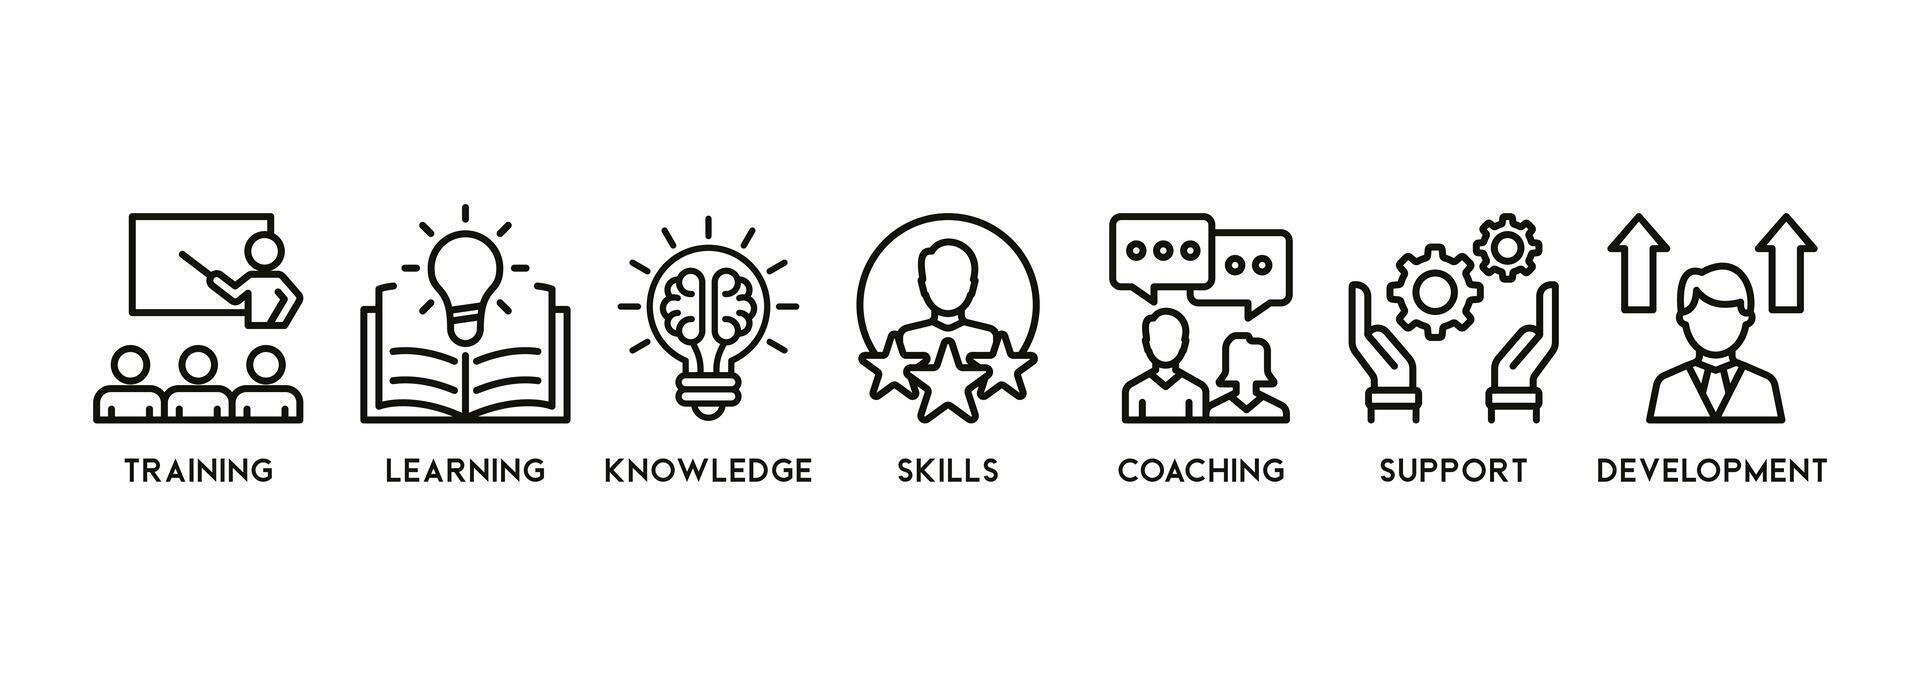 capacité bâtiment bannière la toile icône vecteur illustration concept avec un icône de entraînement, apprentissage, connaissance, compétences, coaching, soutien, et développement